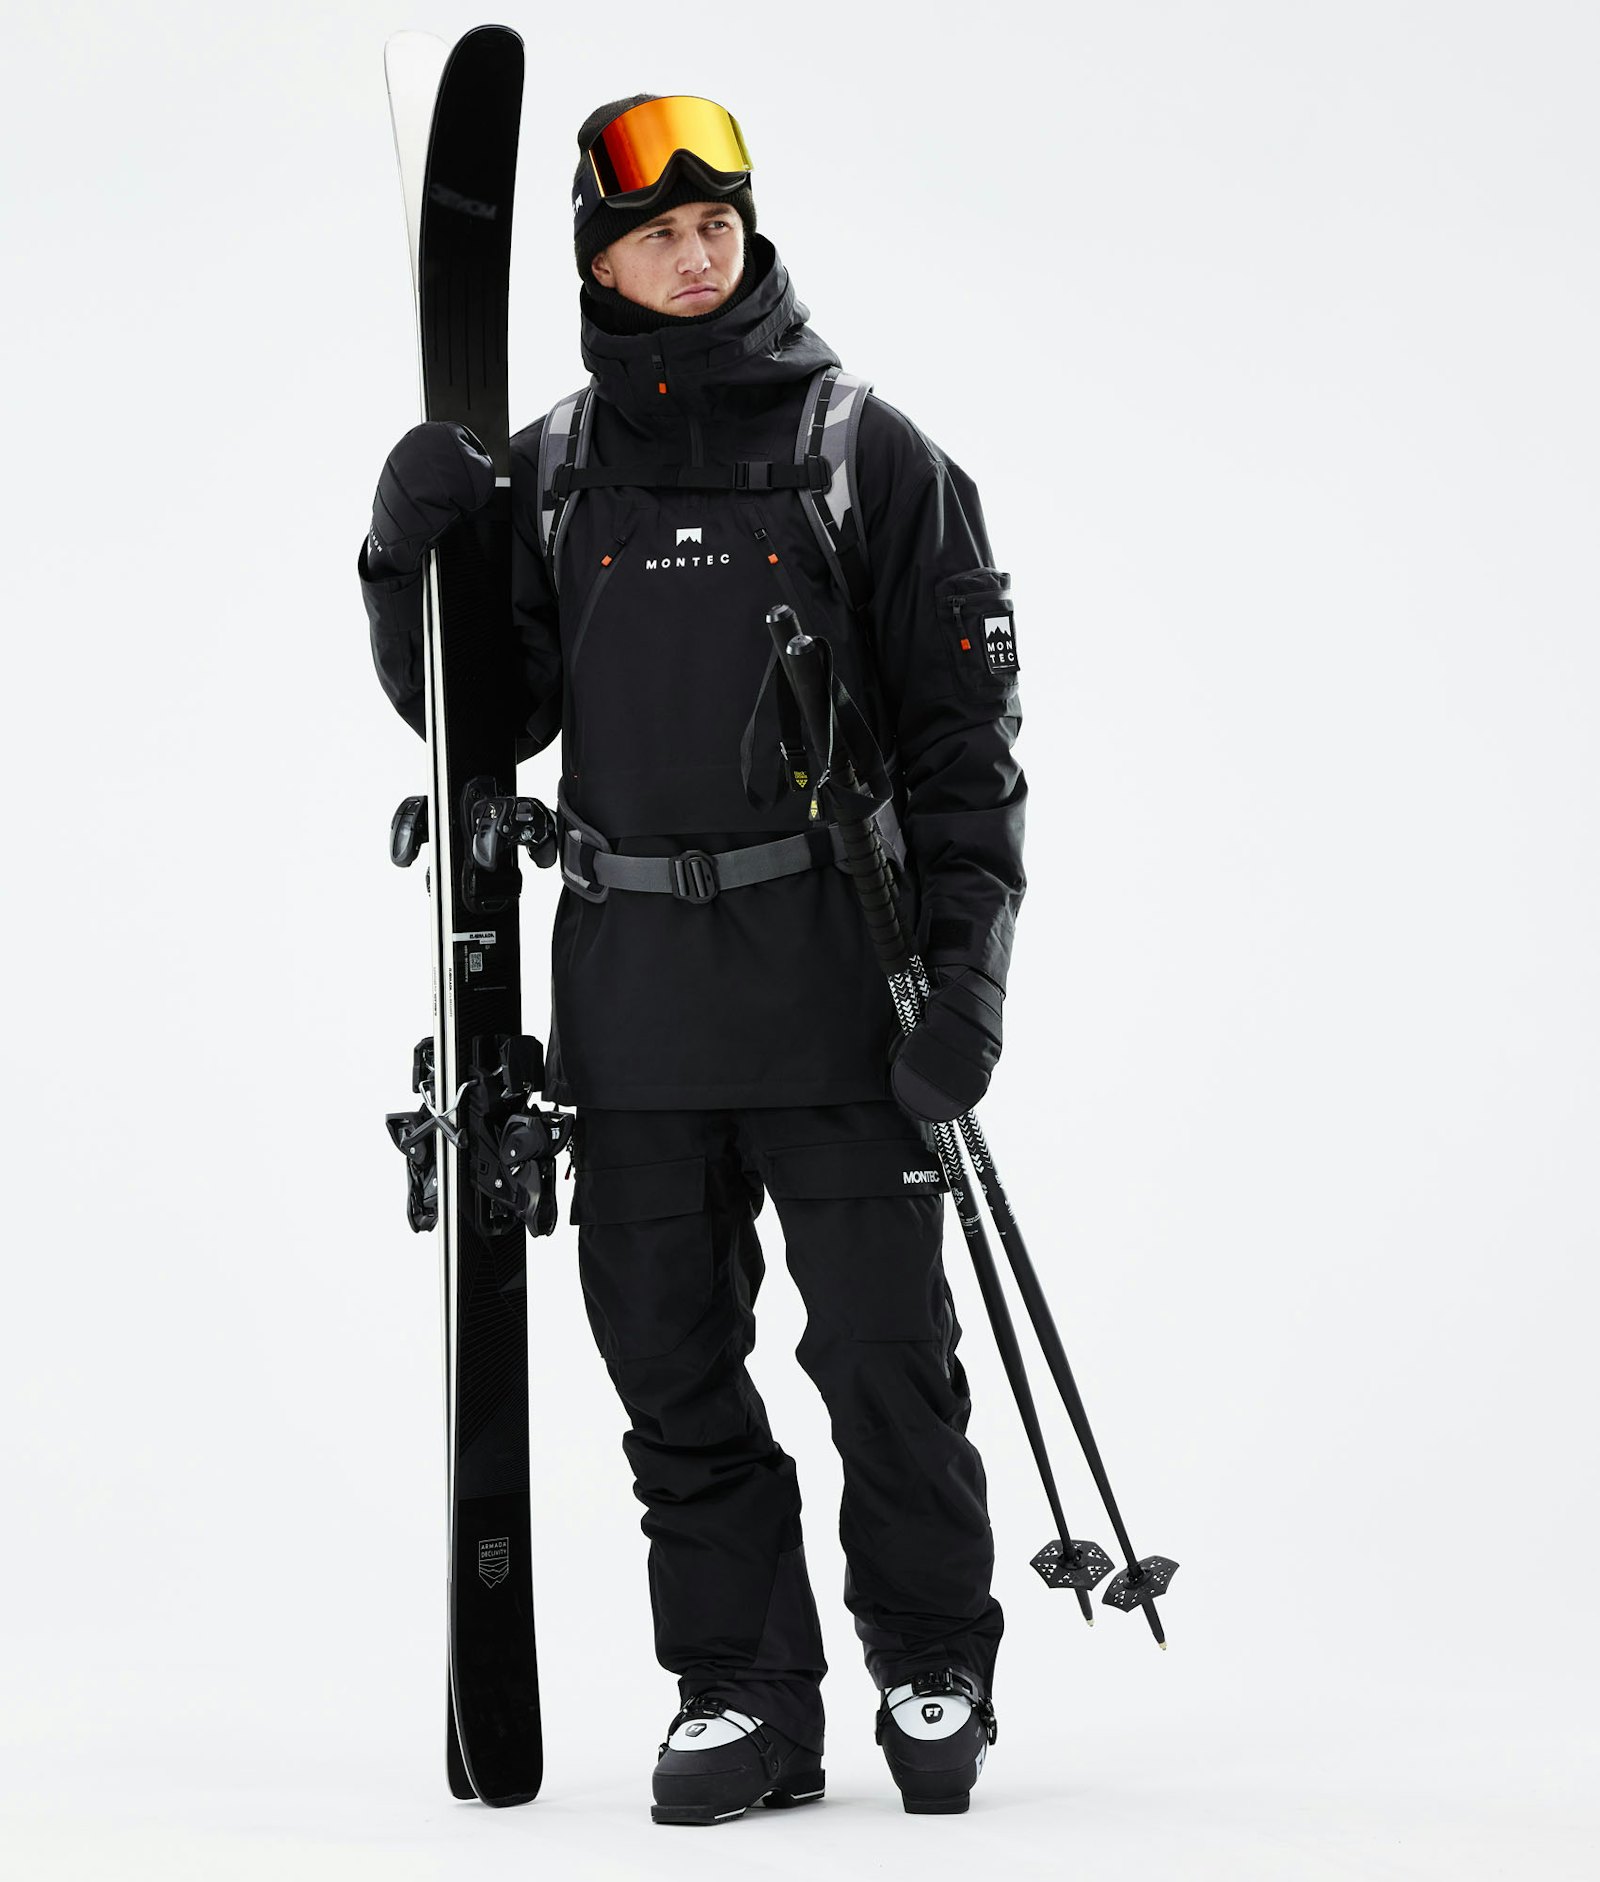 Montec Anzu Ski jas Heren Black